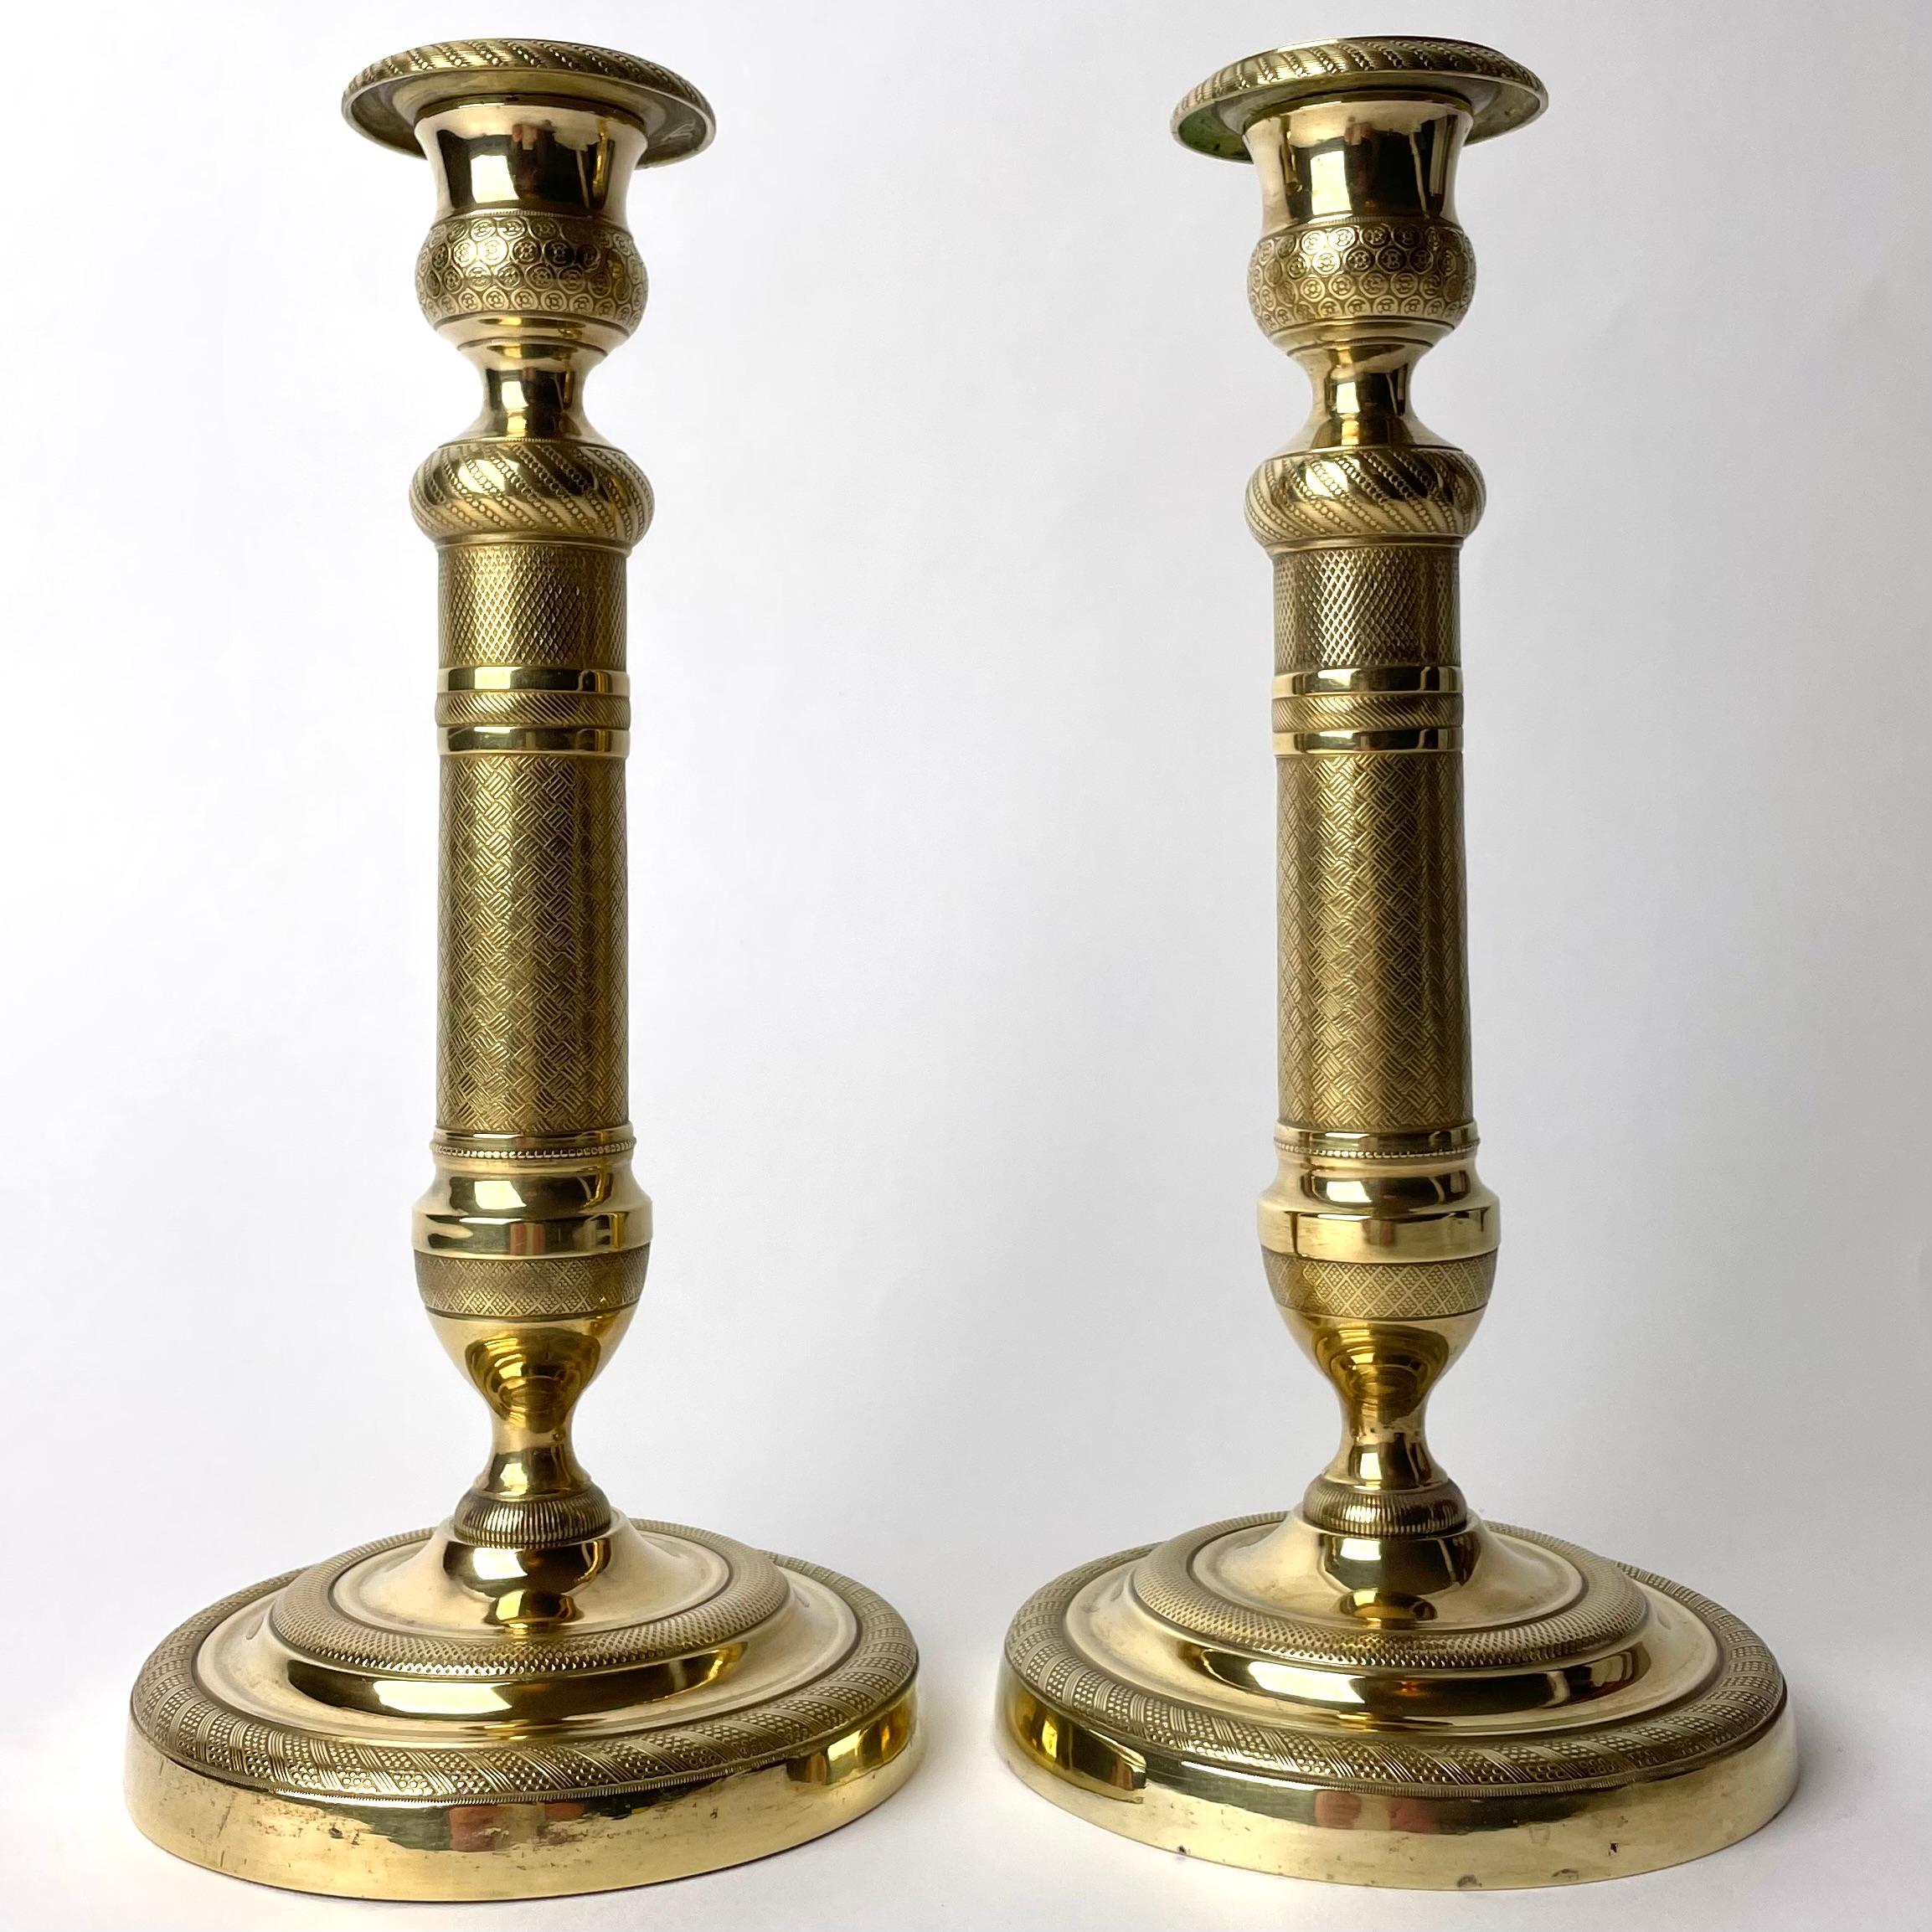 Elegantes Paar Empire-Kerzenleuchter aus vergoldeter Bronze. Hergestellt in Frankreich in den 1820er Jahren. Reich verziert mit zeitgenössischen Dekorationen.

Abnutzung entsprechend dem Alter und dem Gebrauch